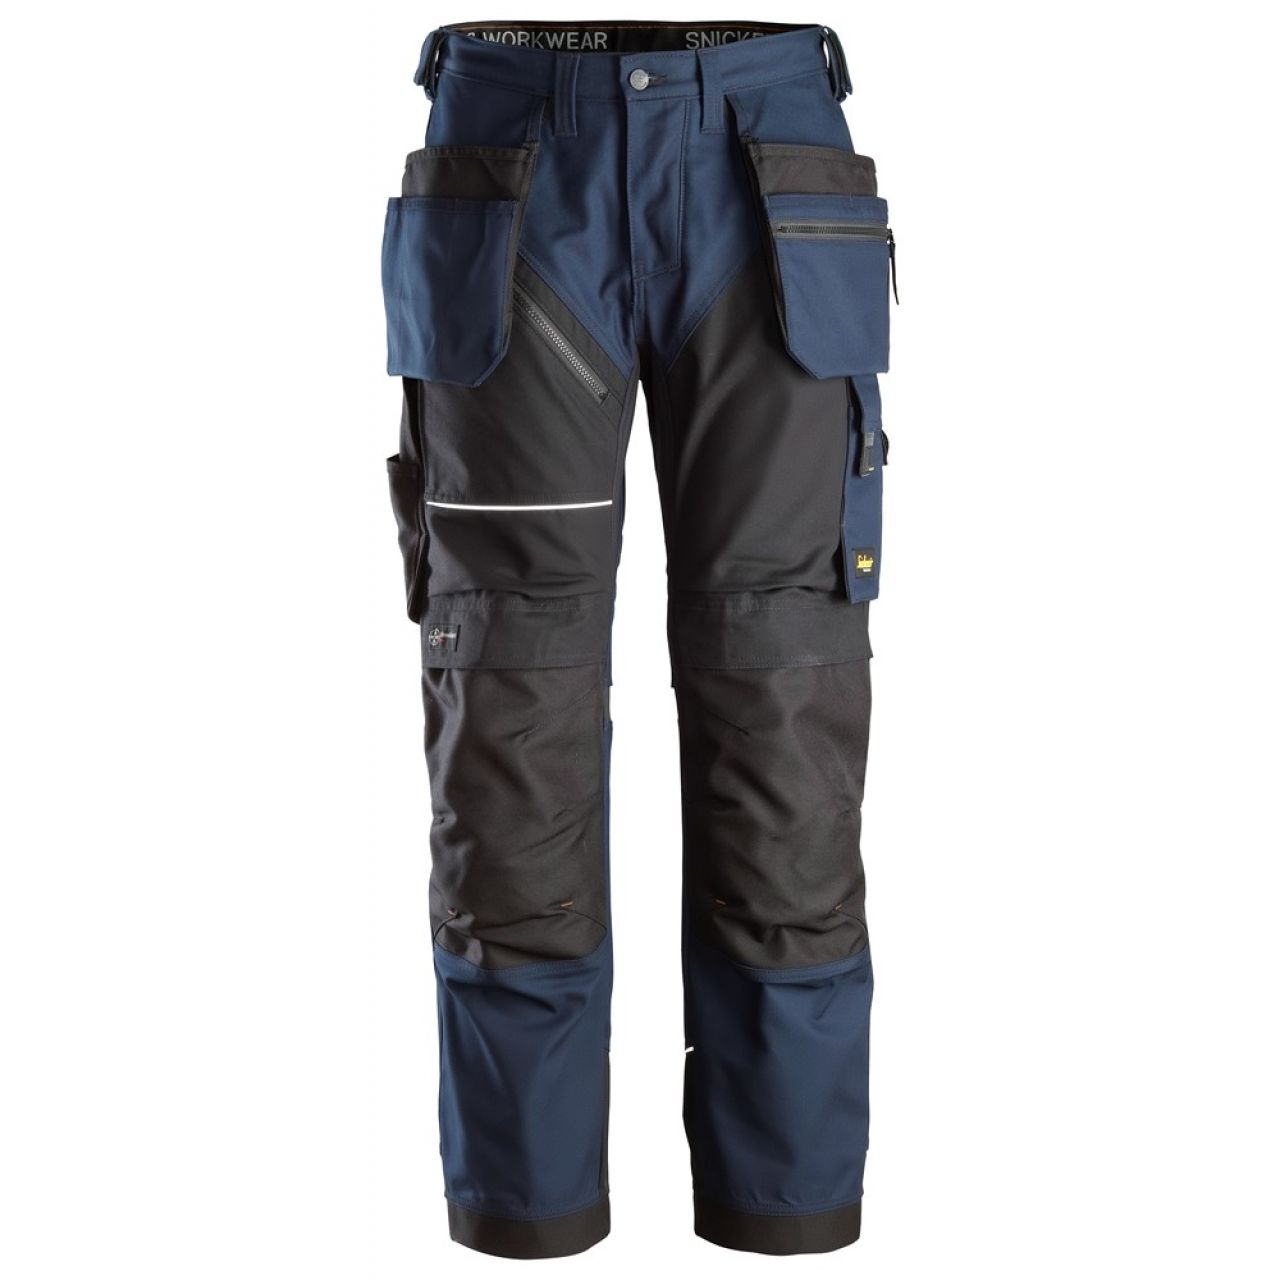 6214 Pantalones largos de trabajo con bolsillos flotantes Canvas+ RuffWork azul marino-negro talla 108